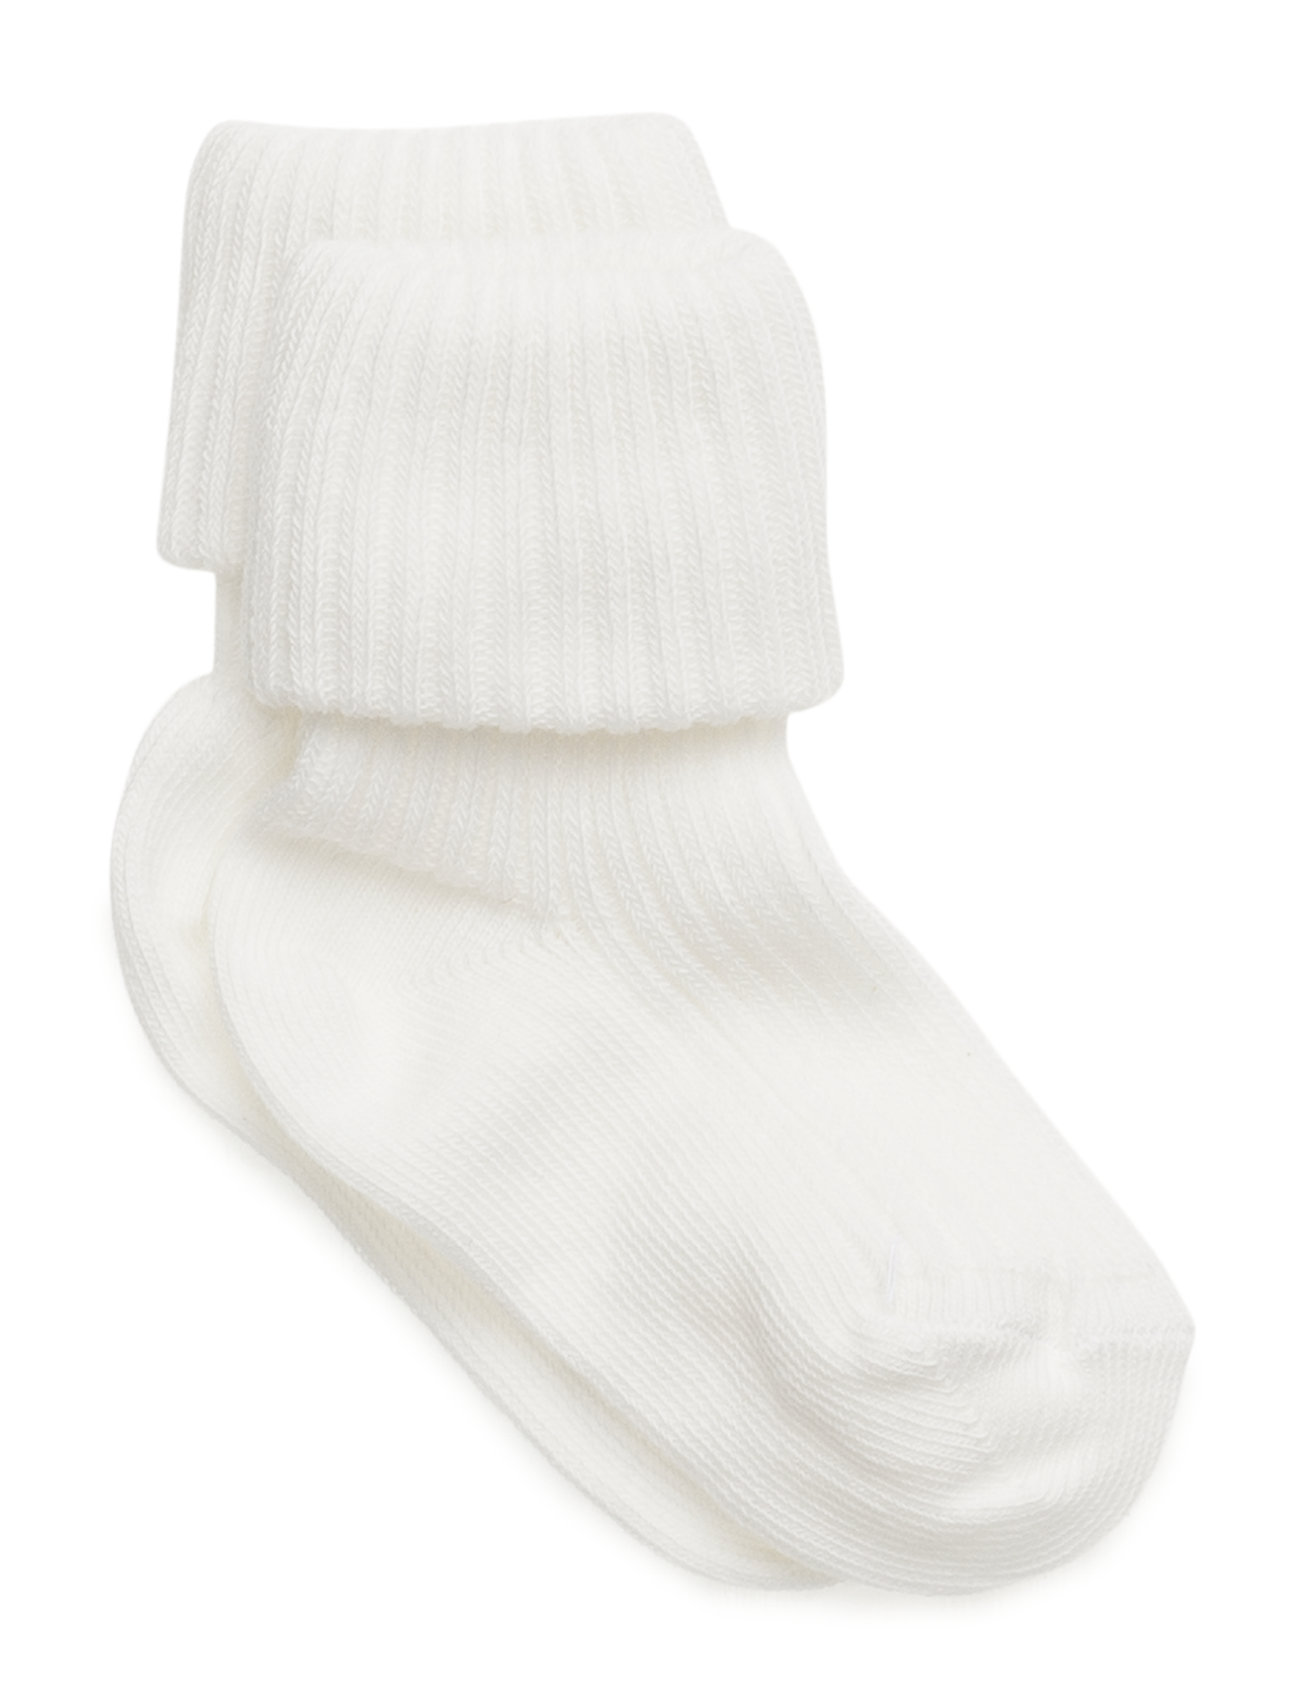 Cotton Rib Baby Socks Night & Underwear Socks Valkoinen Mp Denmark, mp Denmark